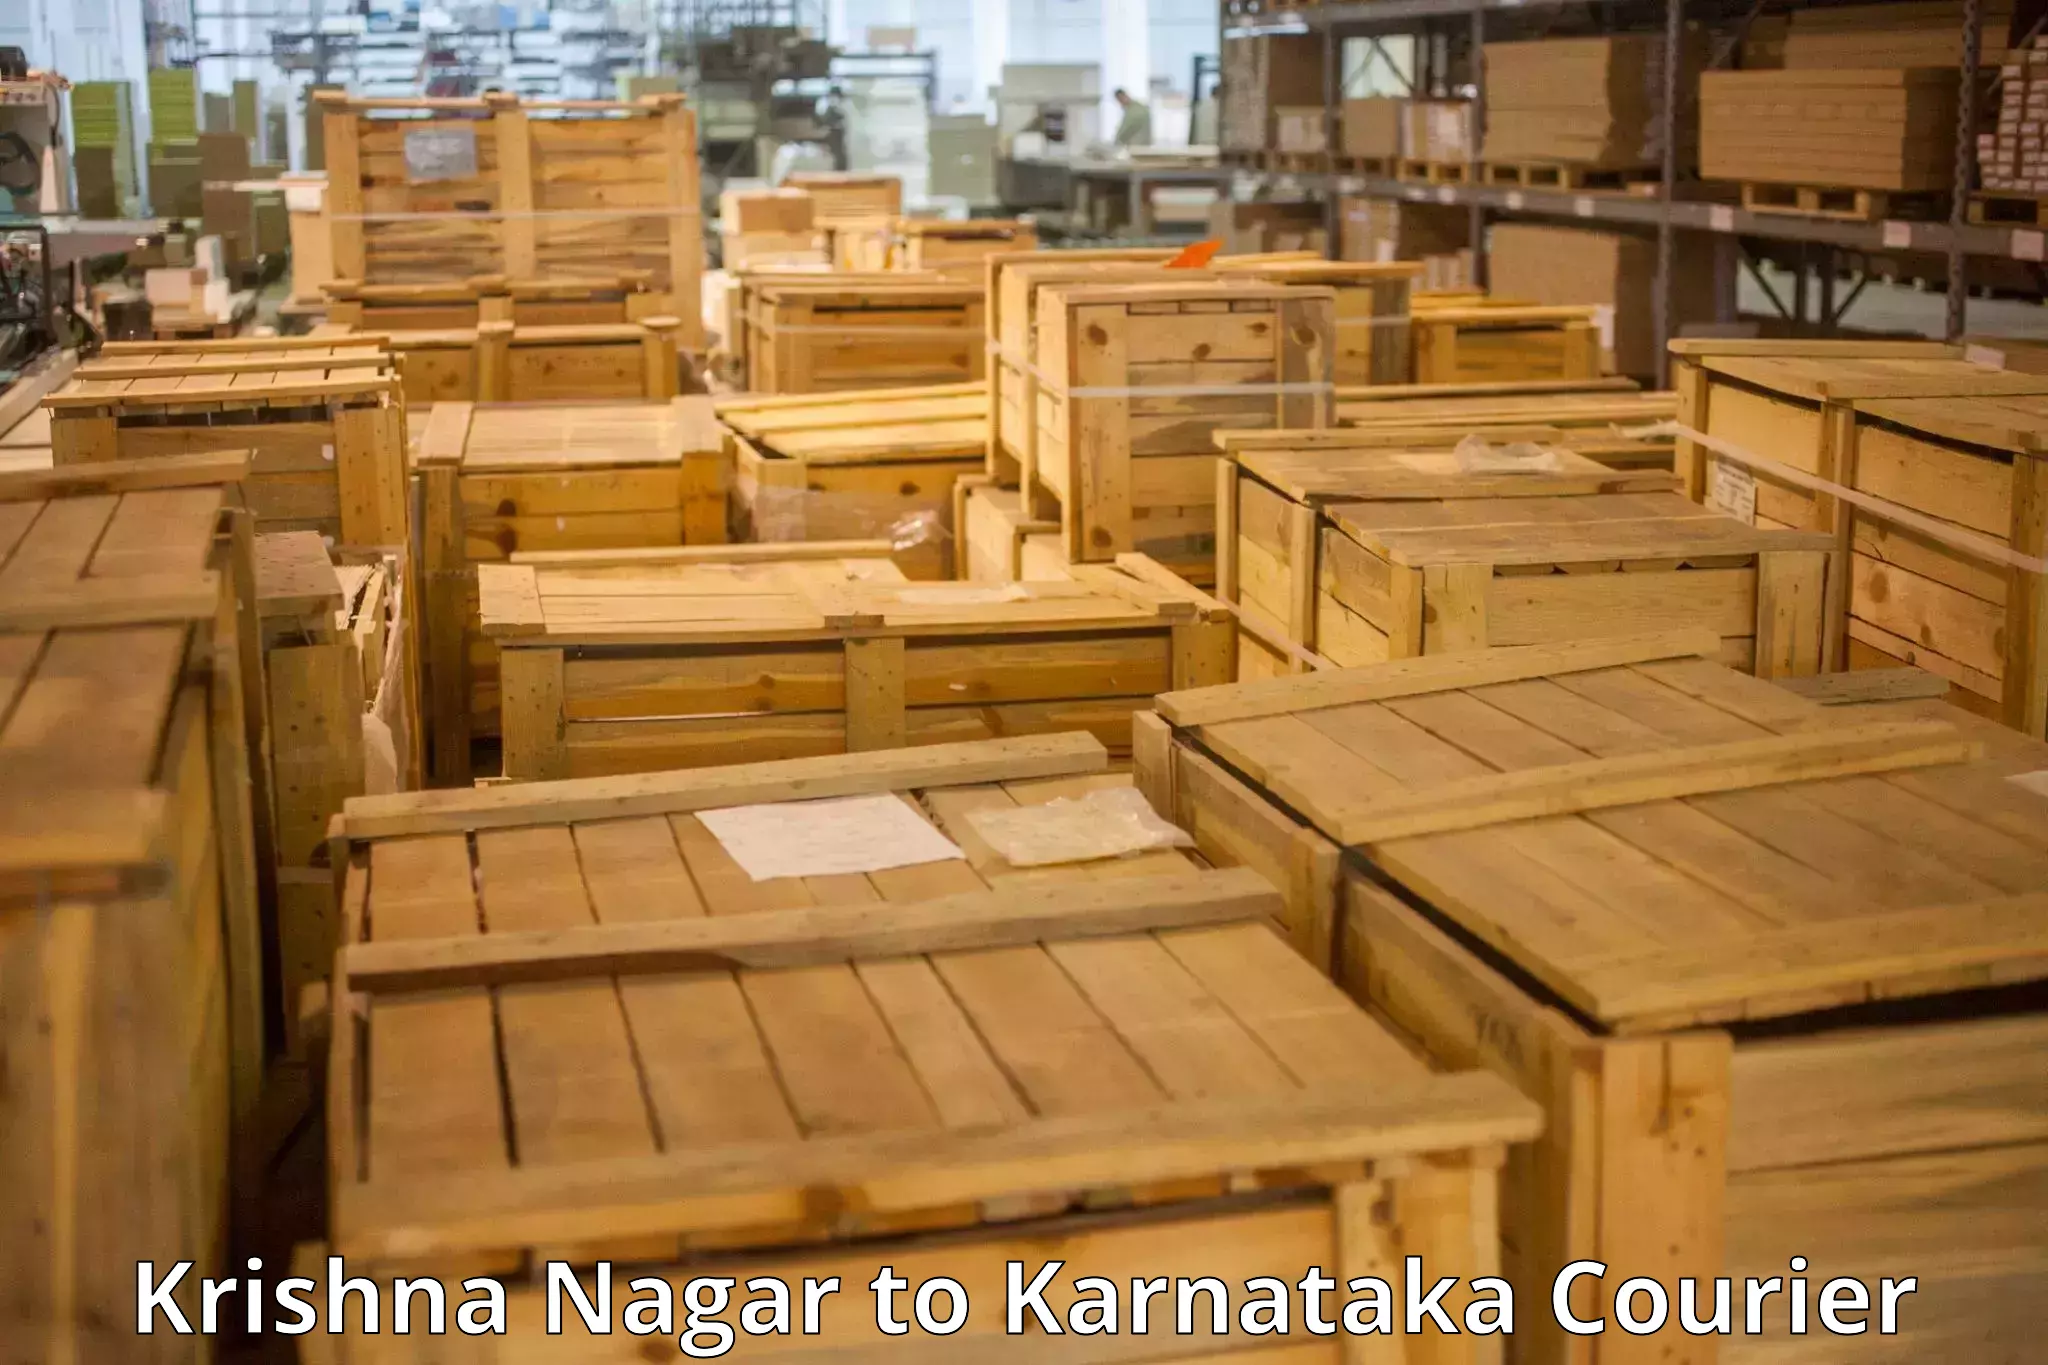 Baggage shipping advice Krishna Nagar to Karnataka